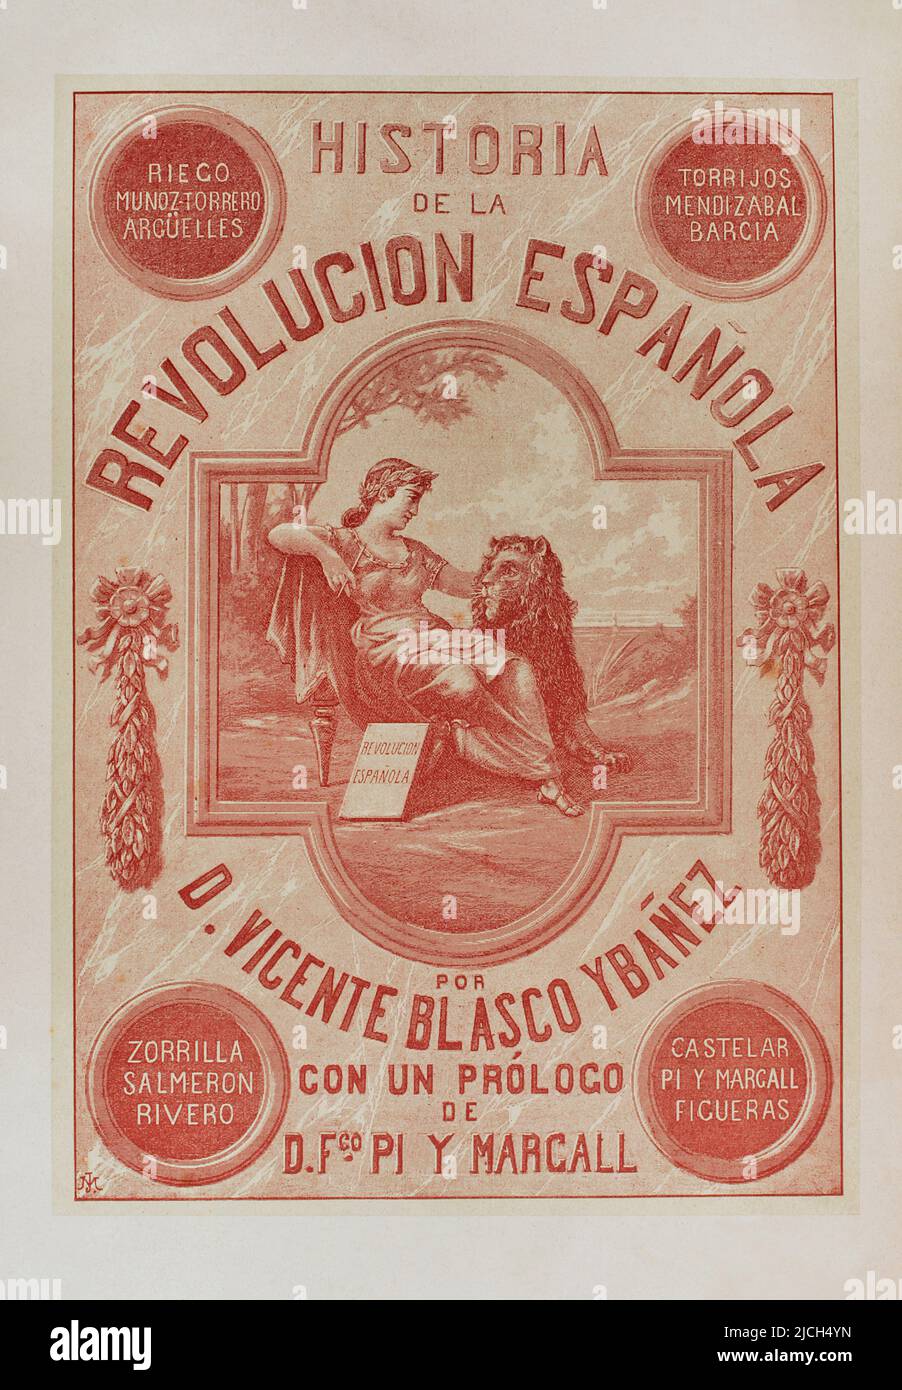 'Historia de la Revolución Española' (Geschichte der Spanischen Revolution, vom Krieg auf der Halbinsel bis zur Restaurierung in Sagunto), von Vicente Blasco Ibáñez. Band I. Veröffentlicht in Barcelona, 1890. Stockfoto